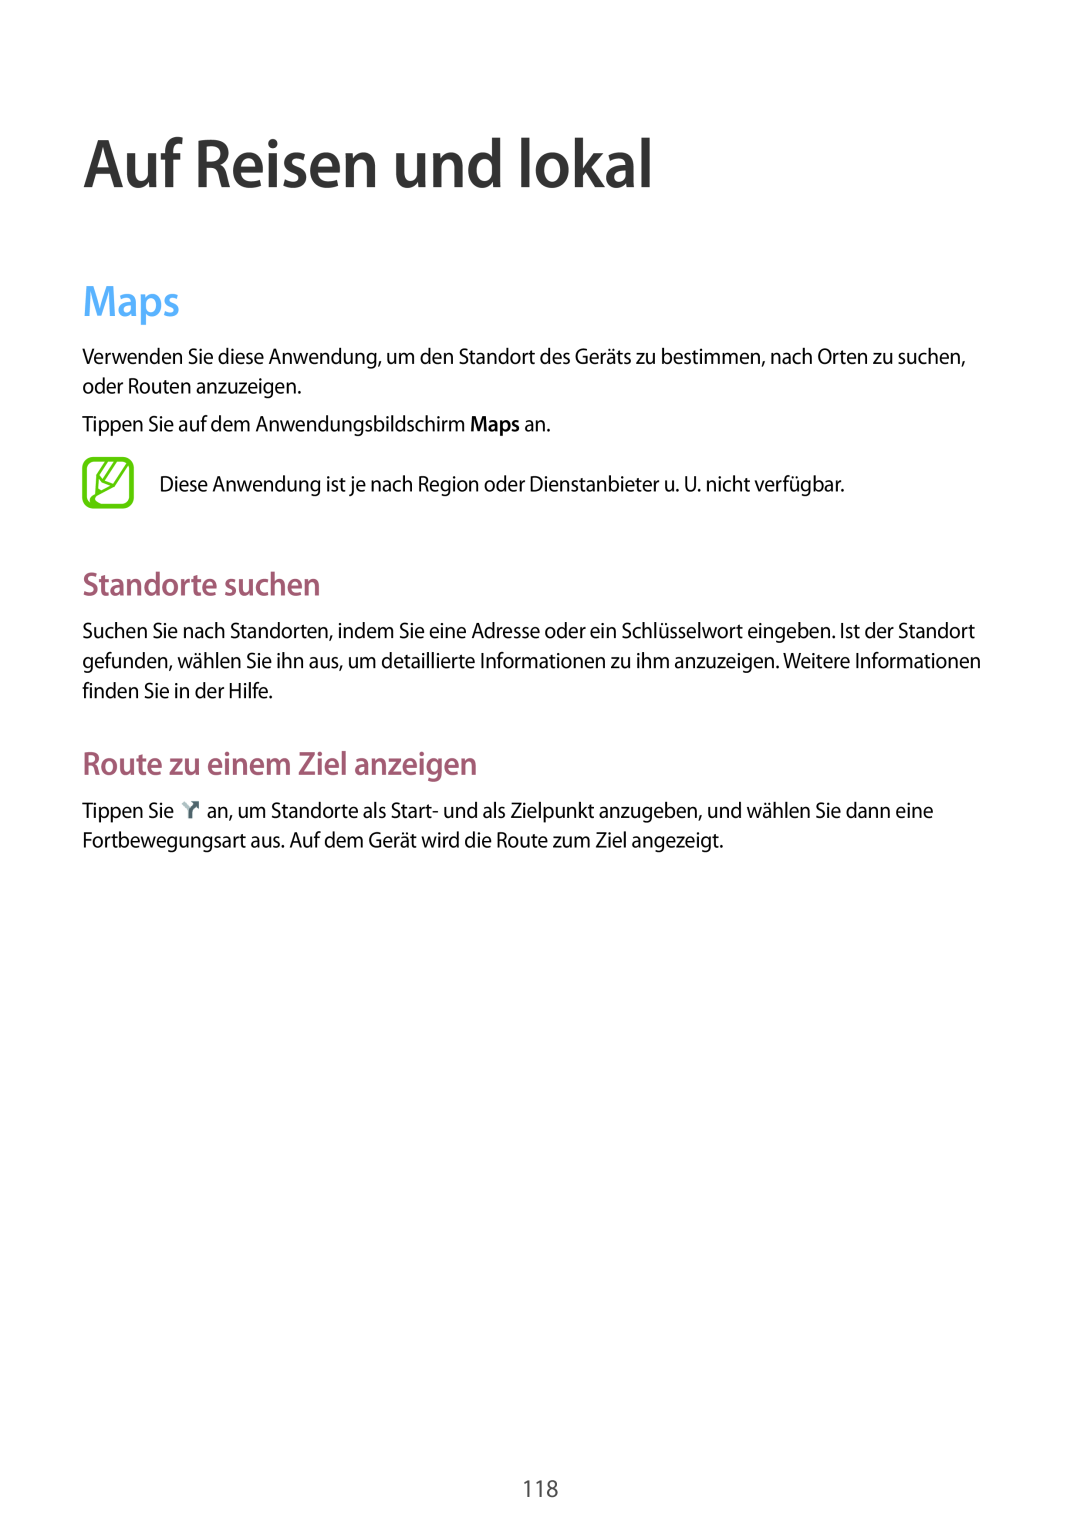 Samsung SM-P6050ZWAATO, SM-P6050ZKAITV manual Auf Reisen und lokal, Maps, Standorte suchen, Route zu einem Ziel anzeigen 